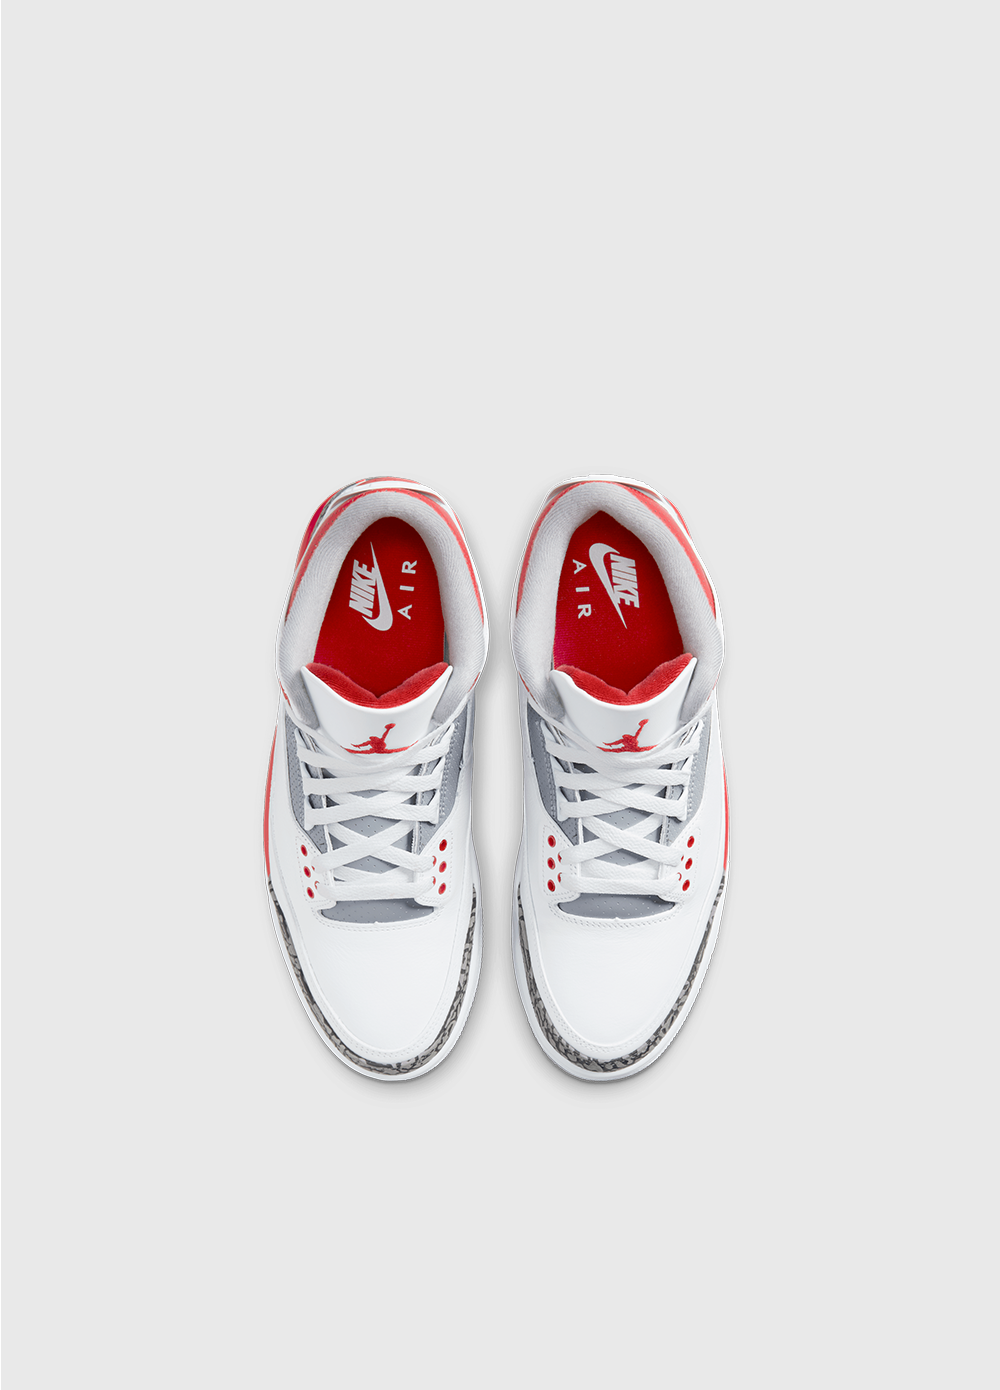 Air Jordan 3 Retro 'Fire Red' Sneakers